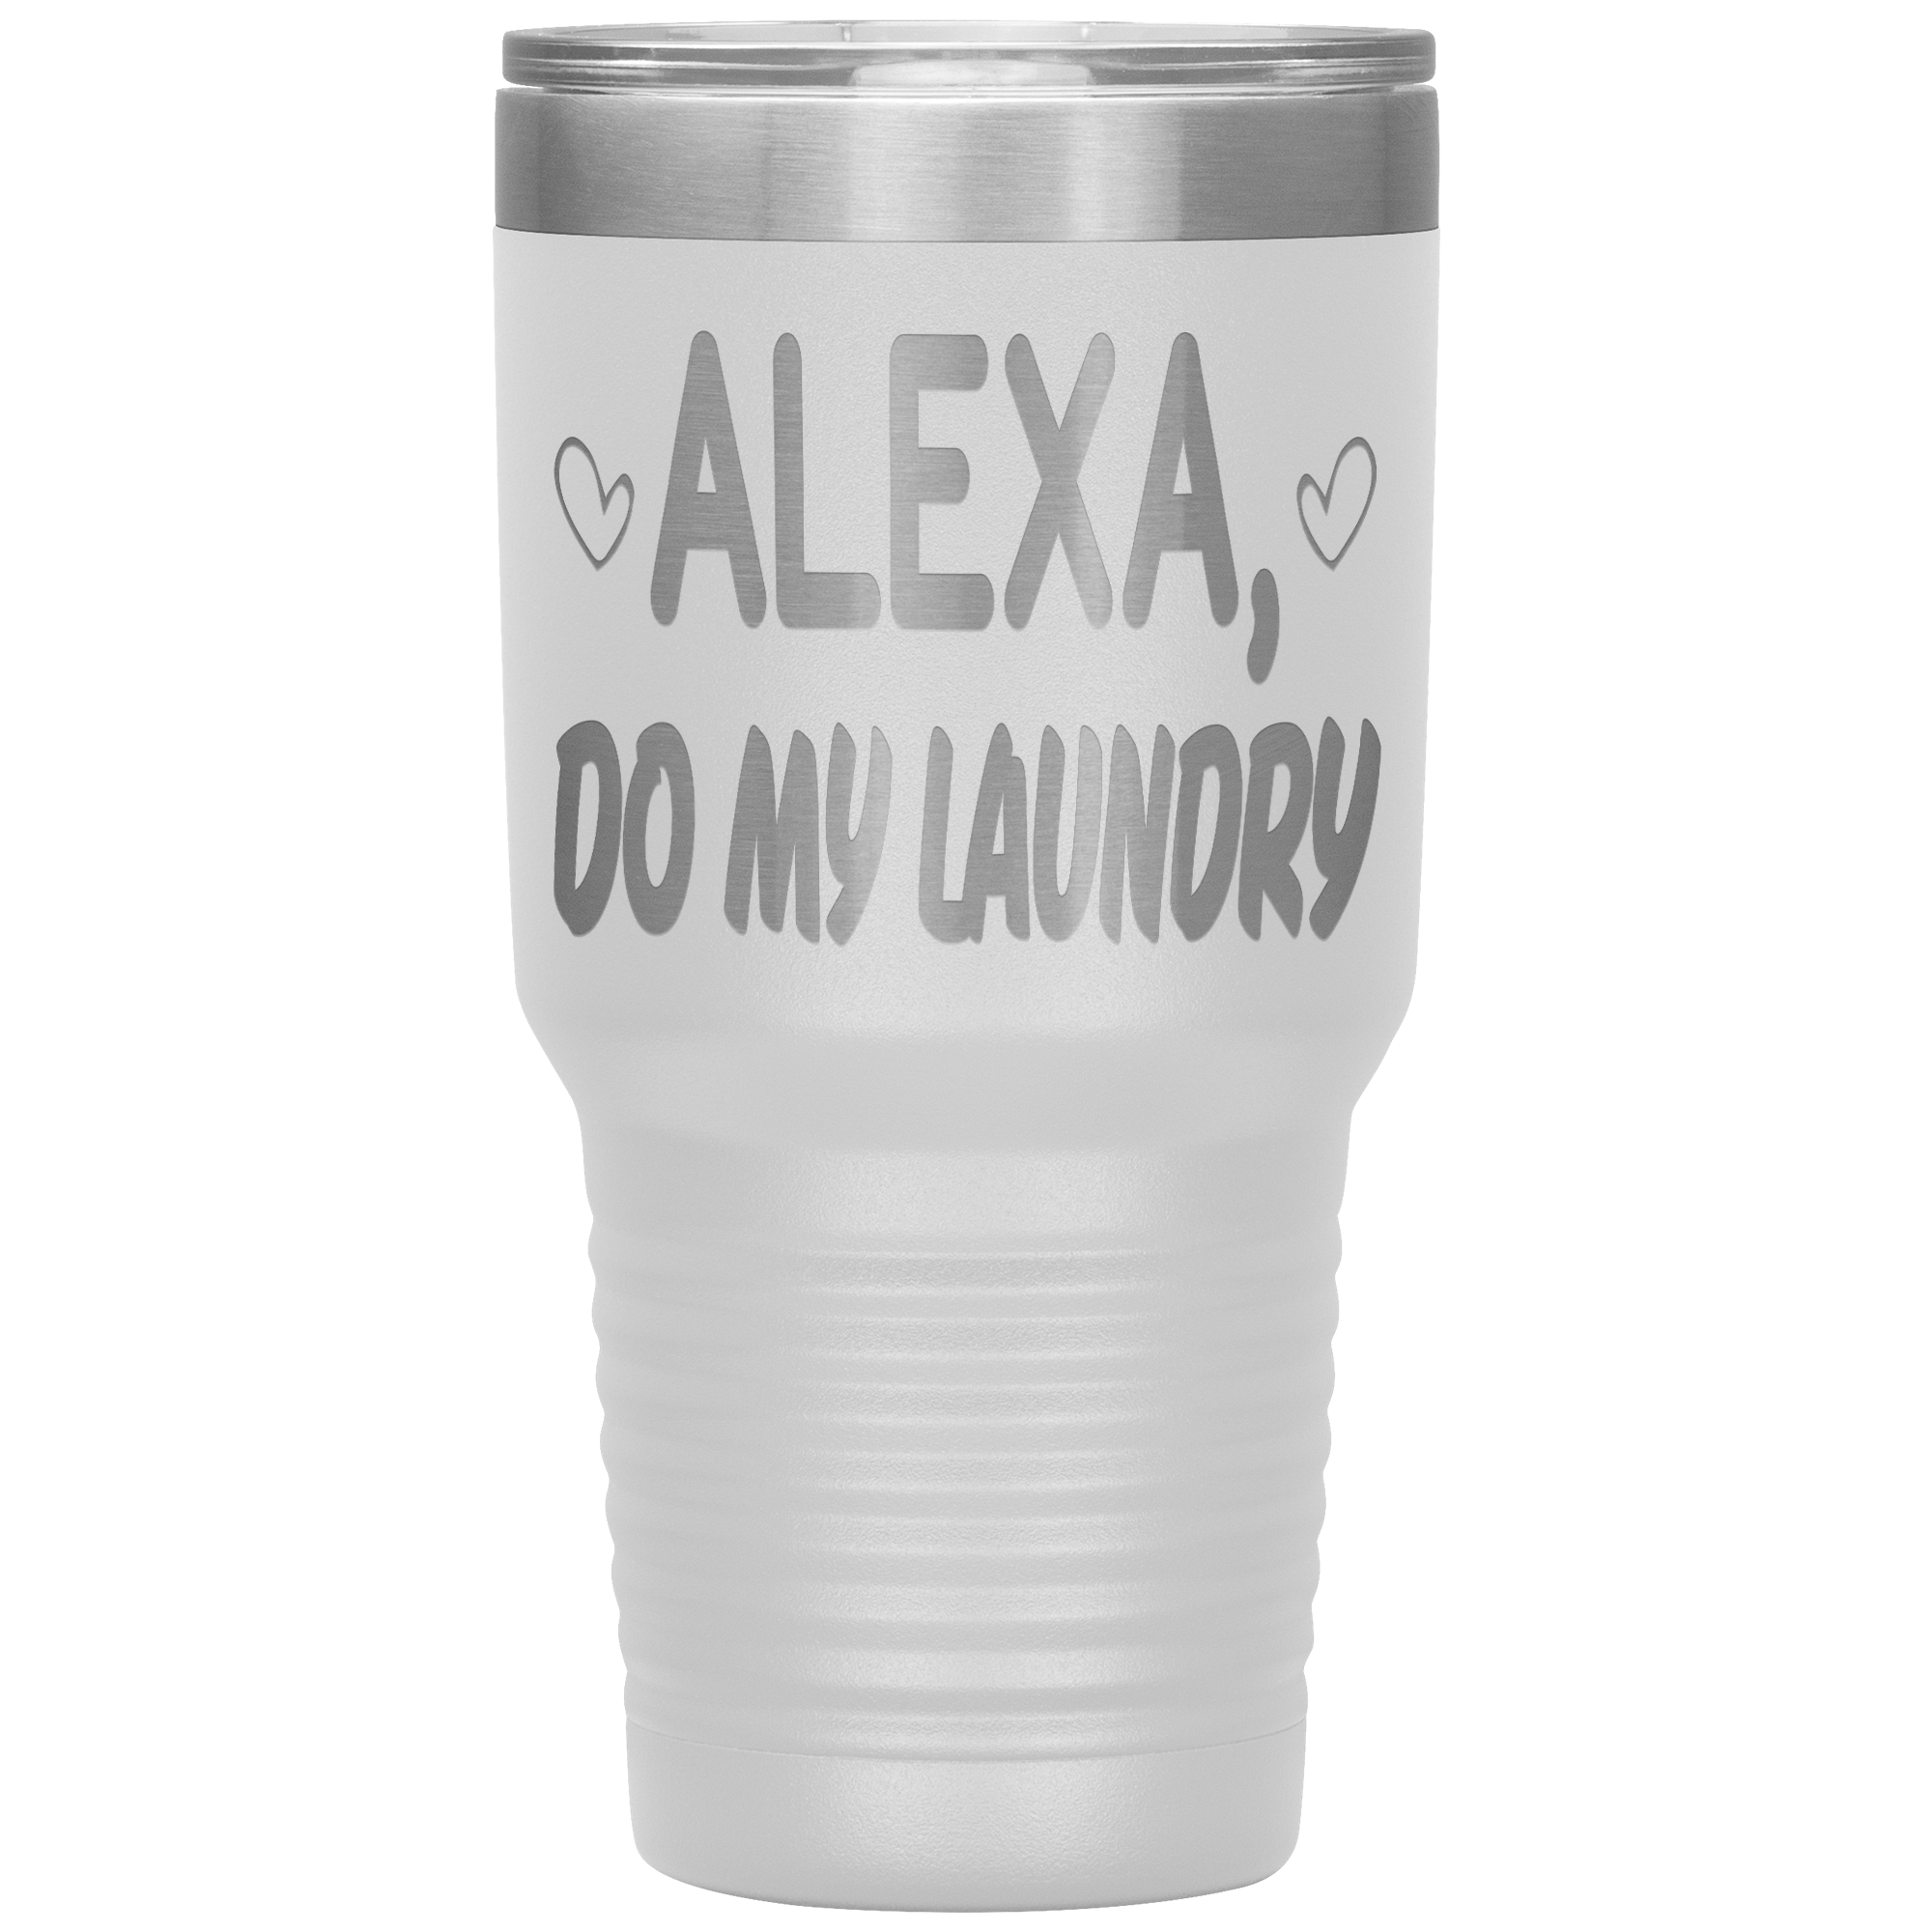 " ALEXA DO MY LAUNDRY ' TUMBLER